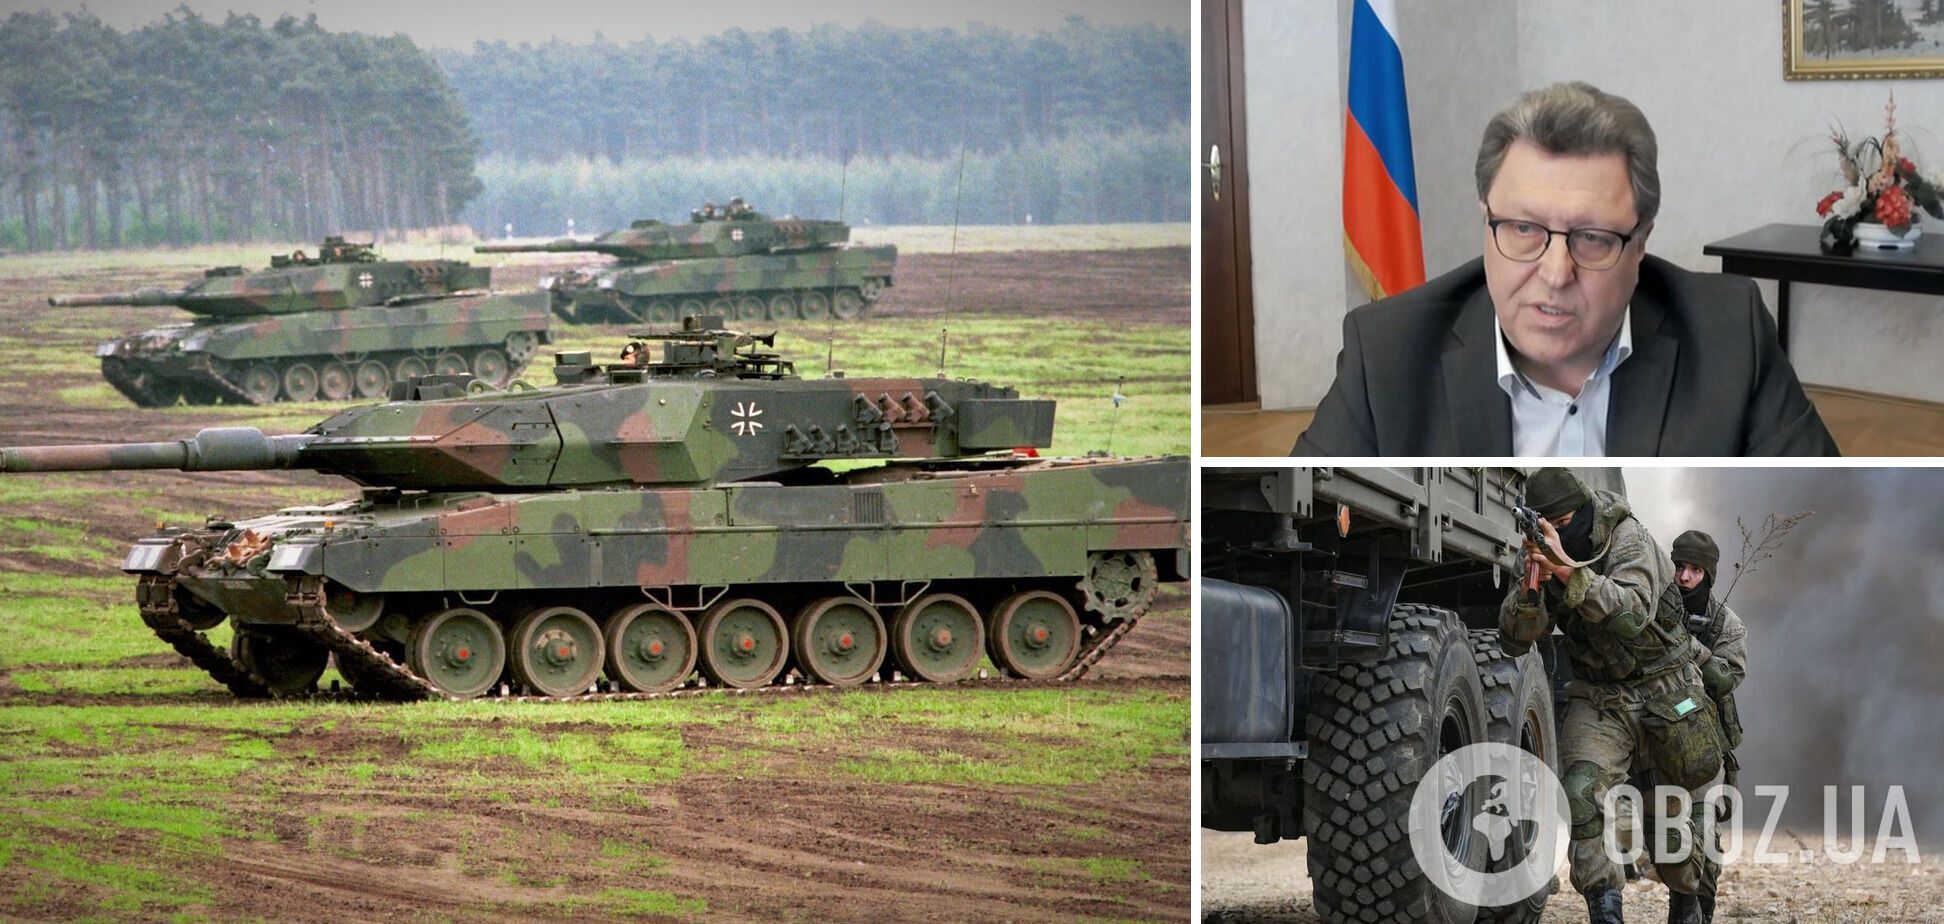 ''Не изменят ситуацию'': дипломат из РФ заявил, что Кремль не откажется от целей войны после поставок Западом танков Киеву